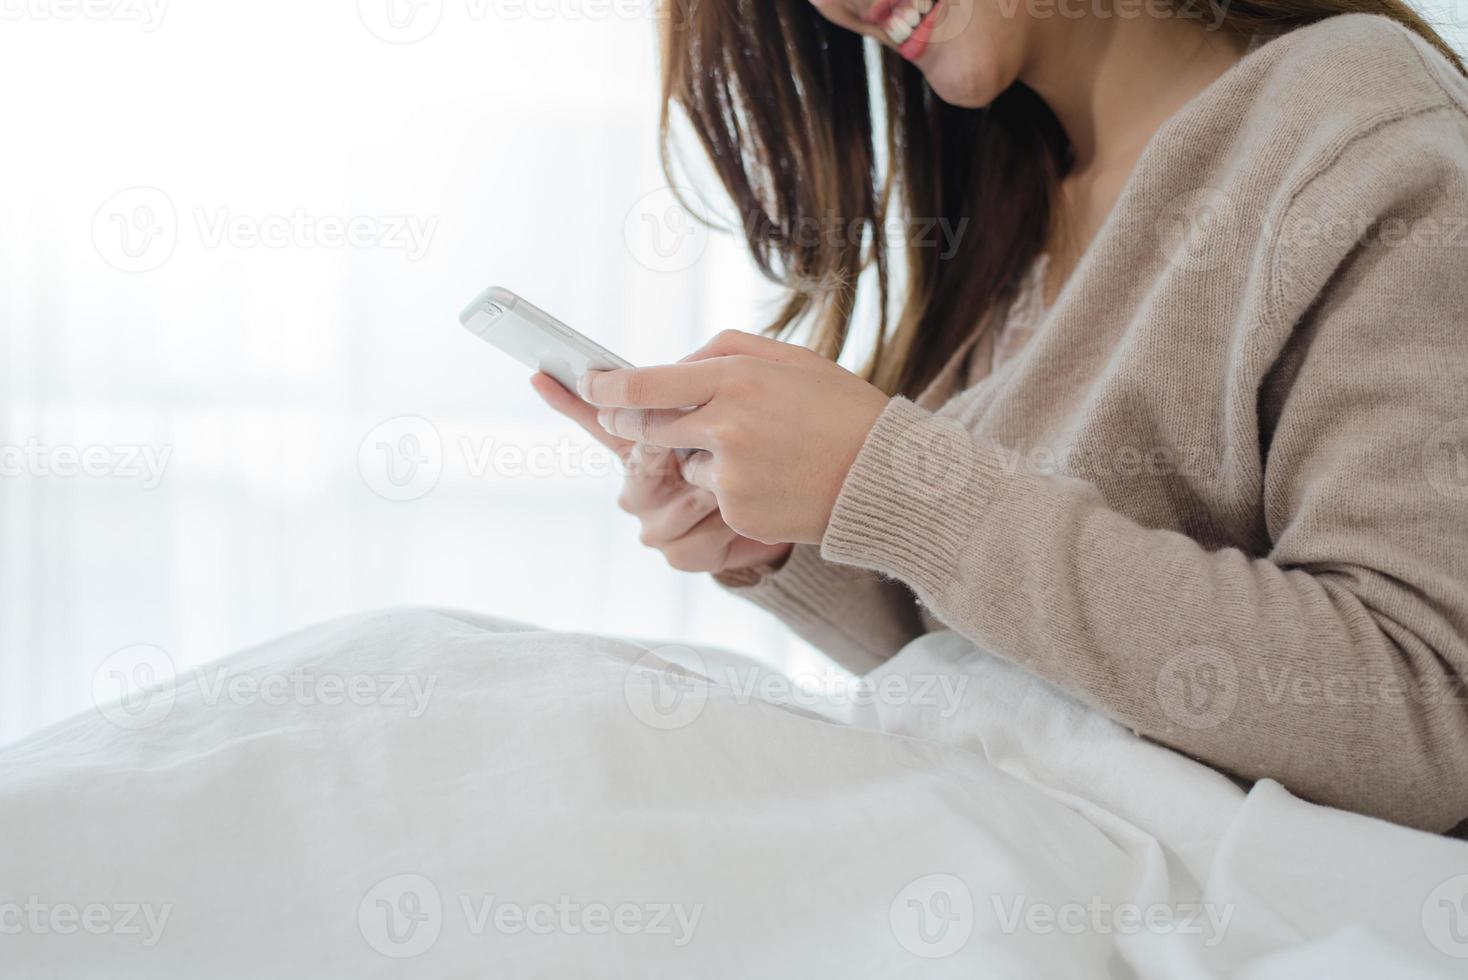 mulheres asiáticas felizes estão usando o telefone inteligente na cama pela manhã. mulher asiática na cama, verificando aplicativos sociais com o smartphone. mulher sorridente navegando na net com o celular em casa. conceito de viciado em celular. foto